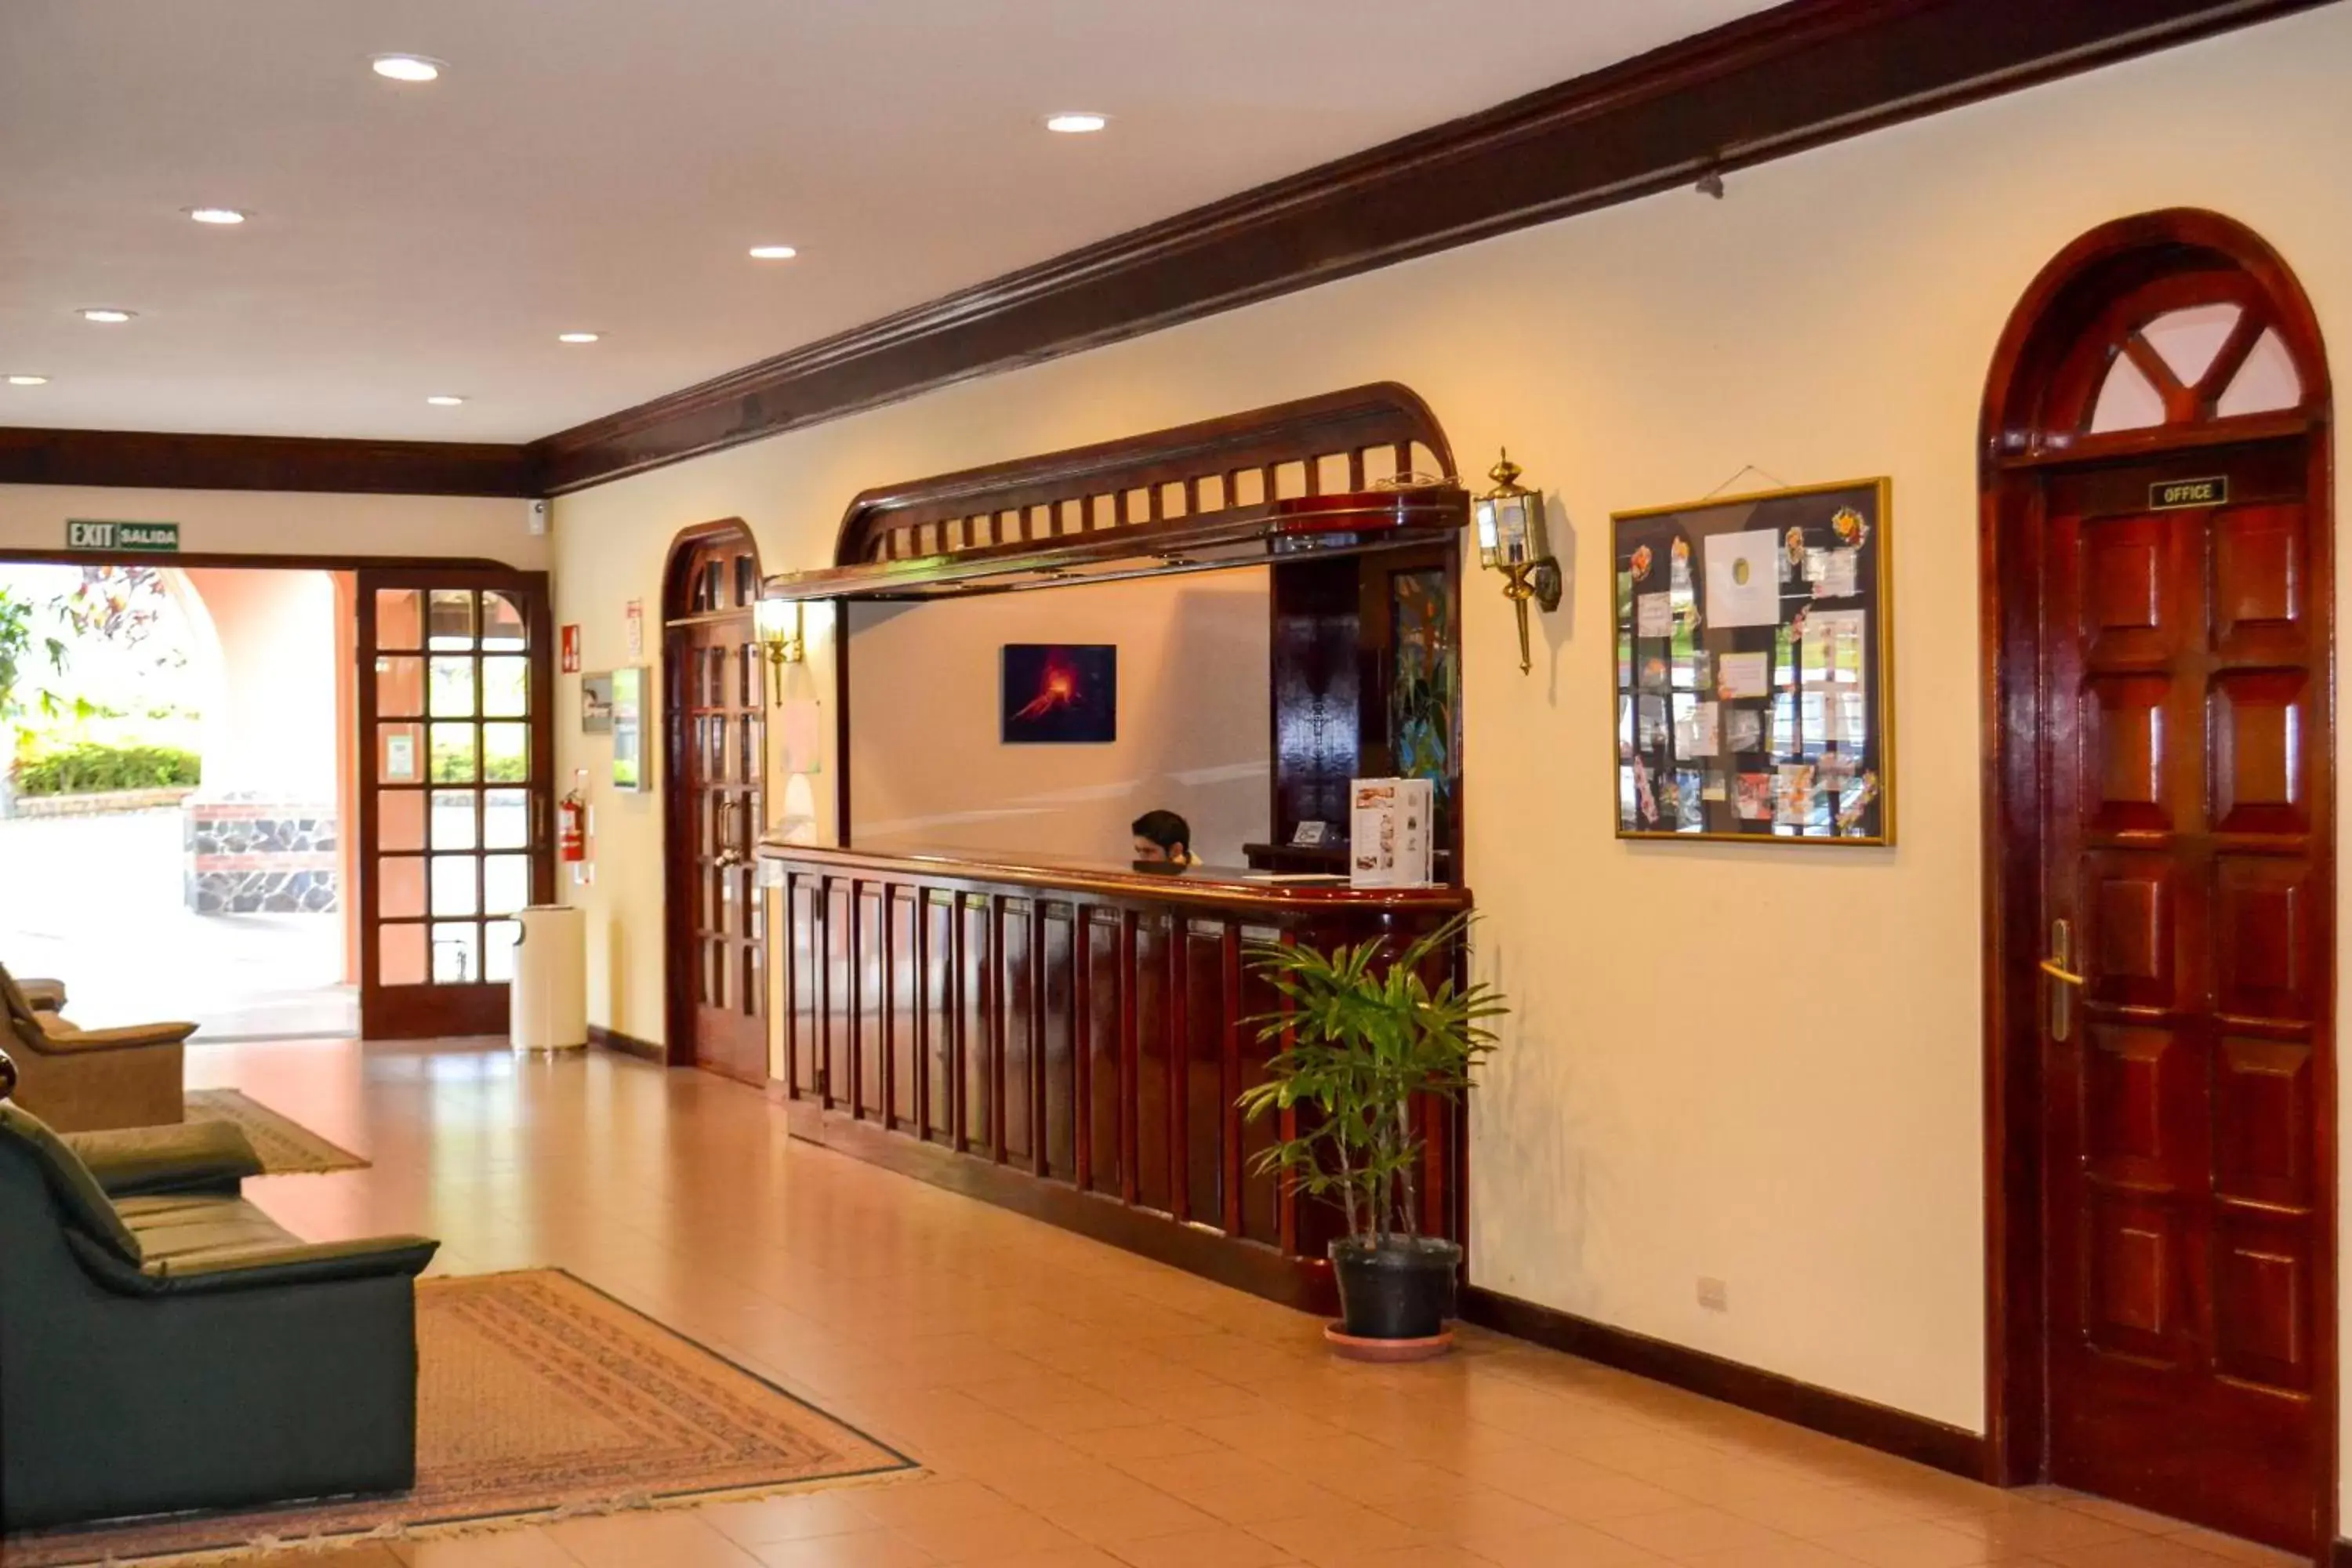 Area and facilities, Lobby/Reception in El Tucano Resort & Thermal Spa